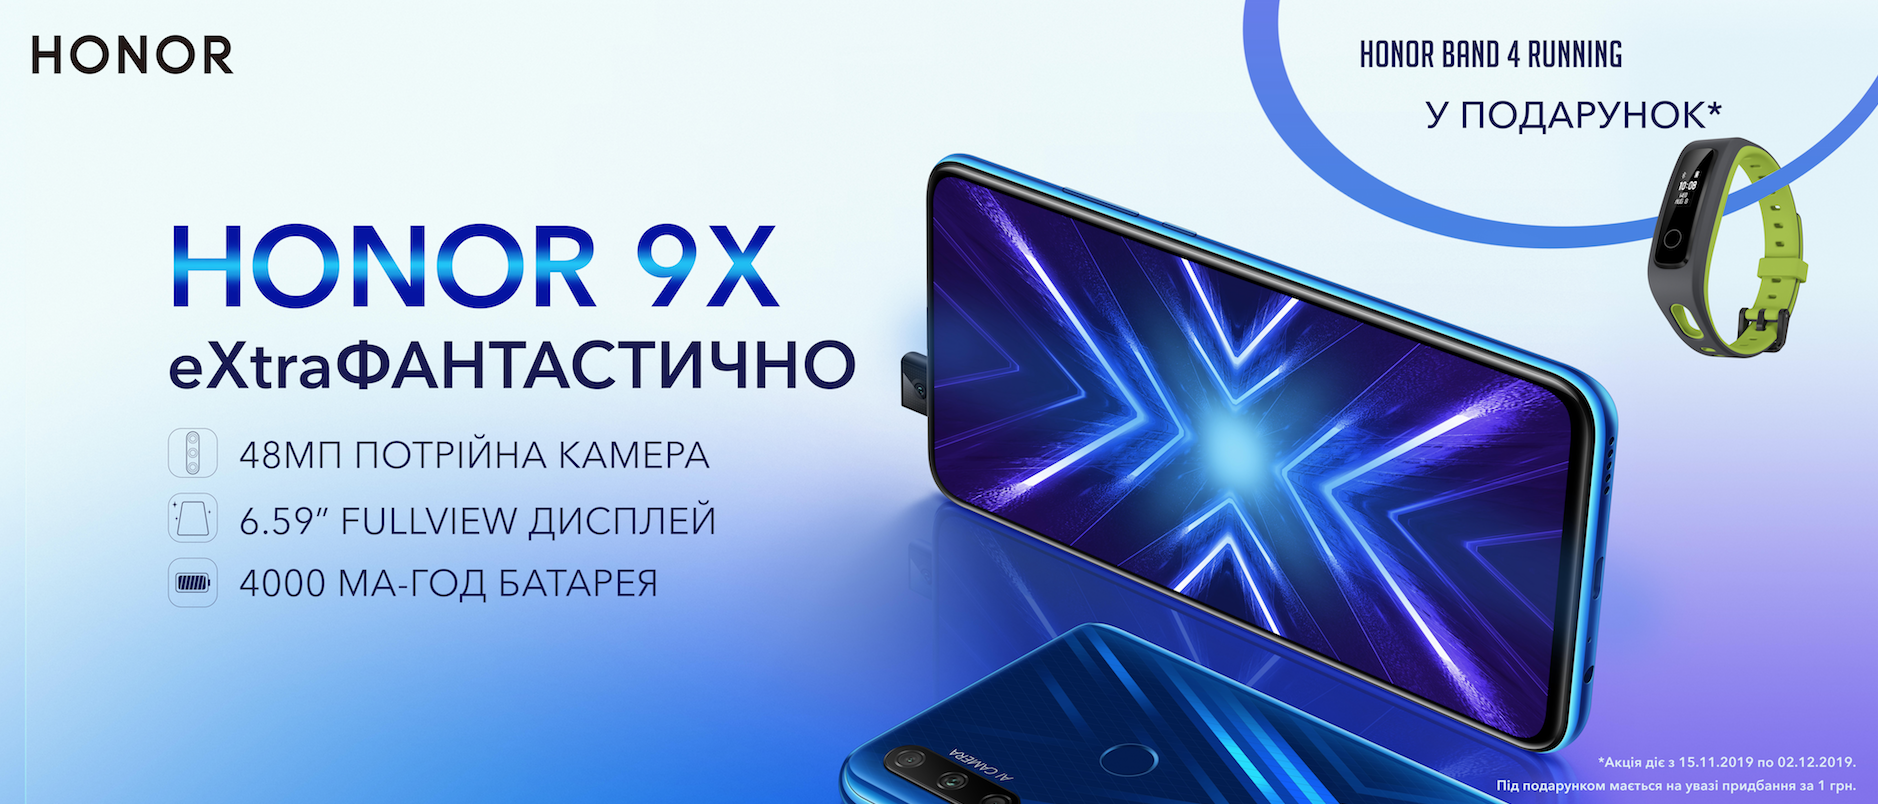 Бренд HONOR оголошує старт продажу HONOR 9X в Україні